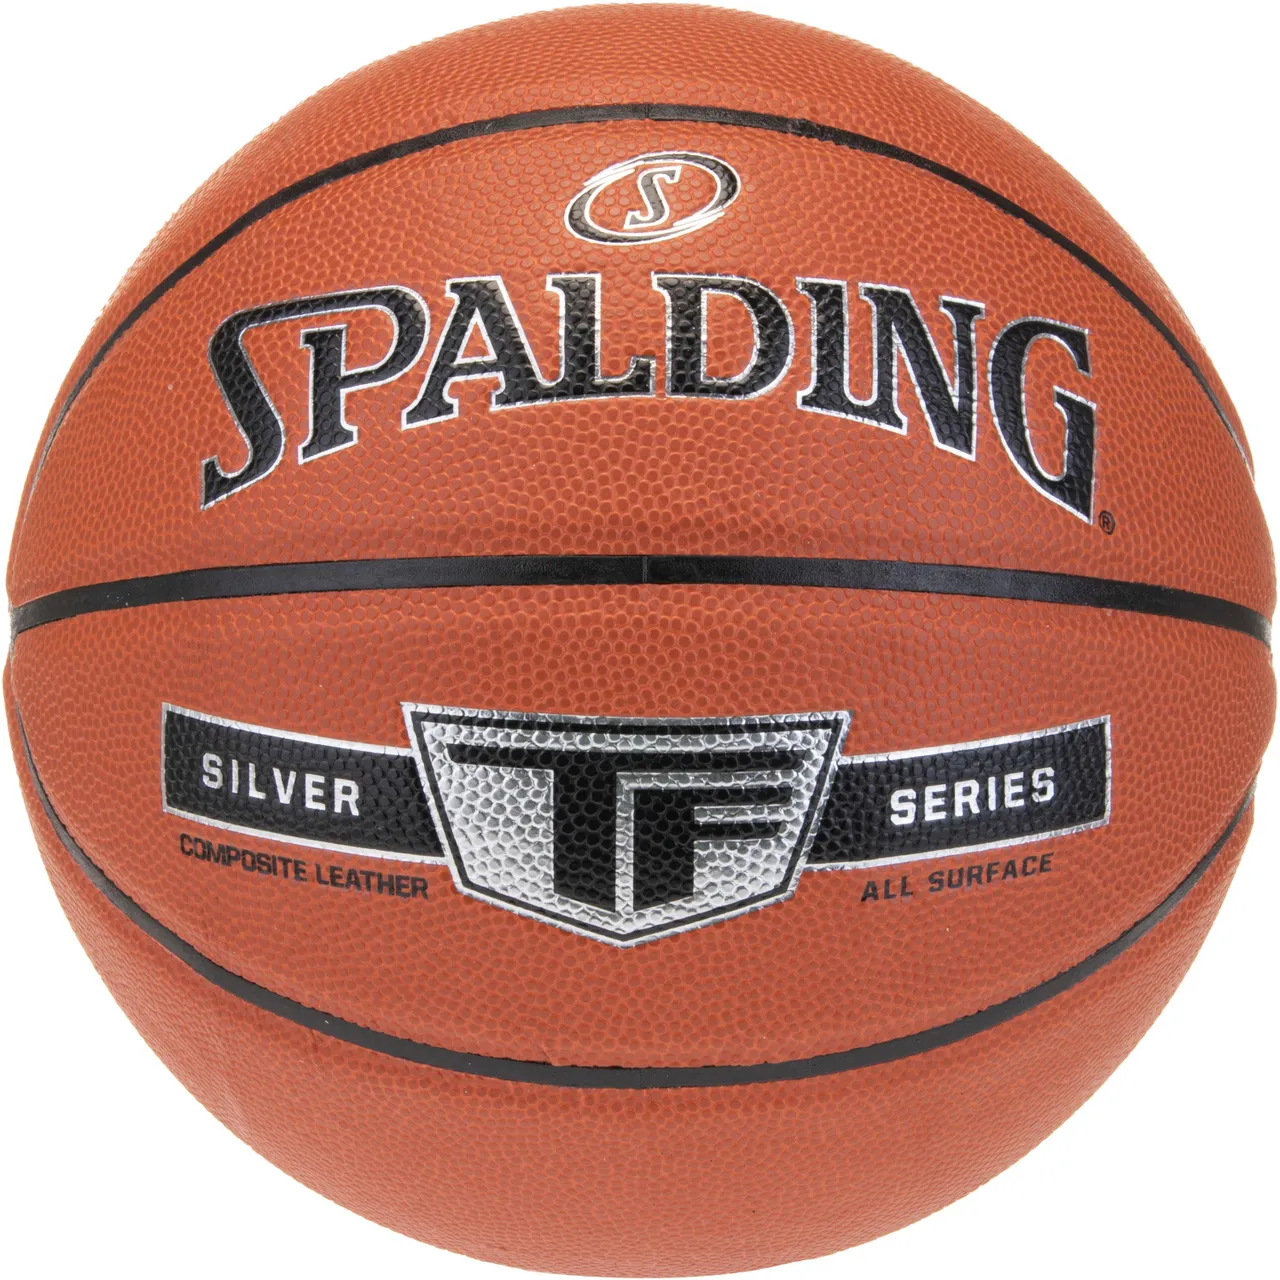 SPALDING TF Silver Composite Basketball